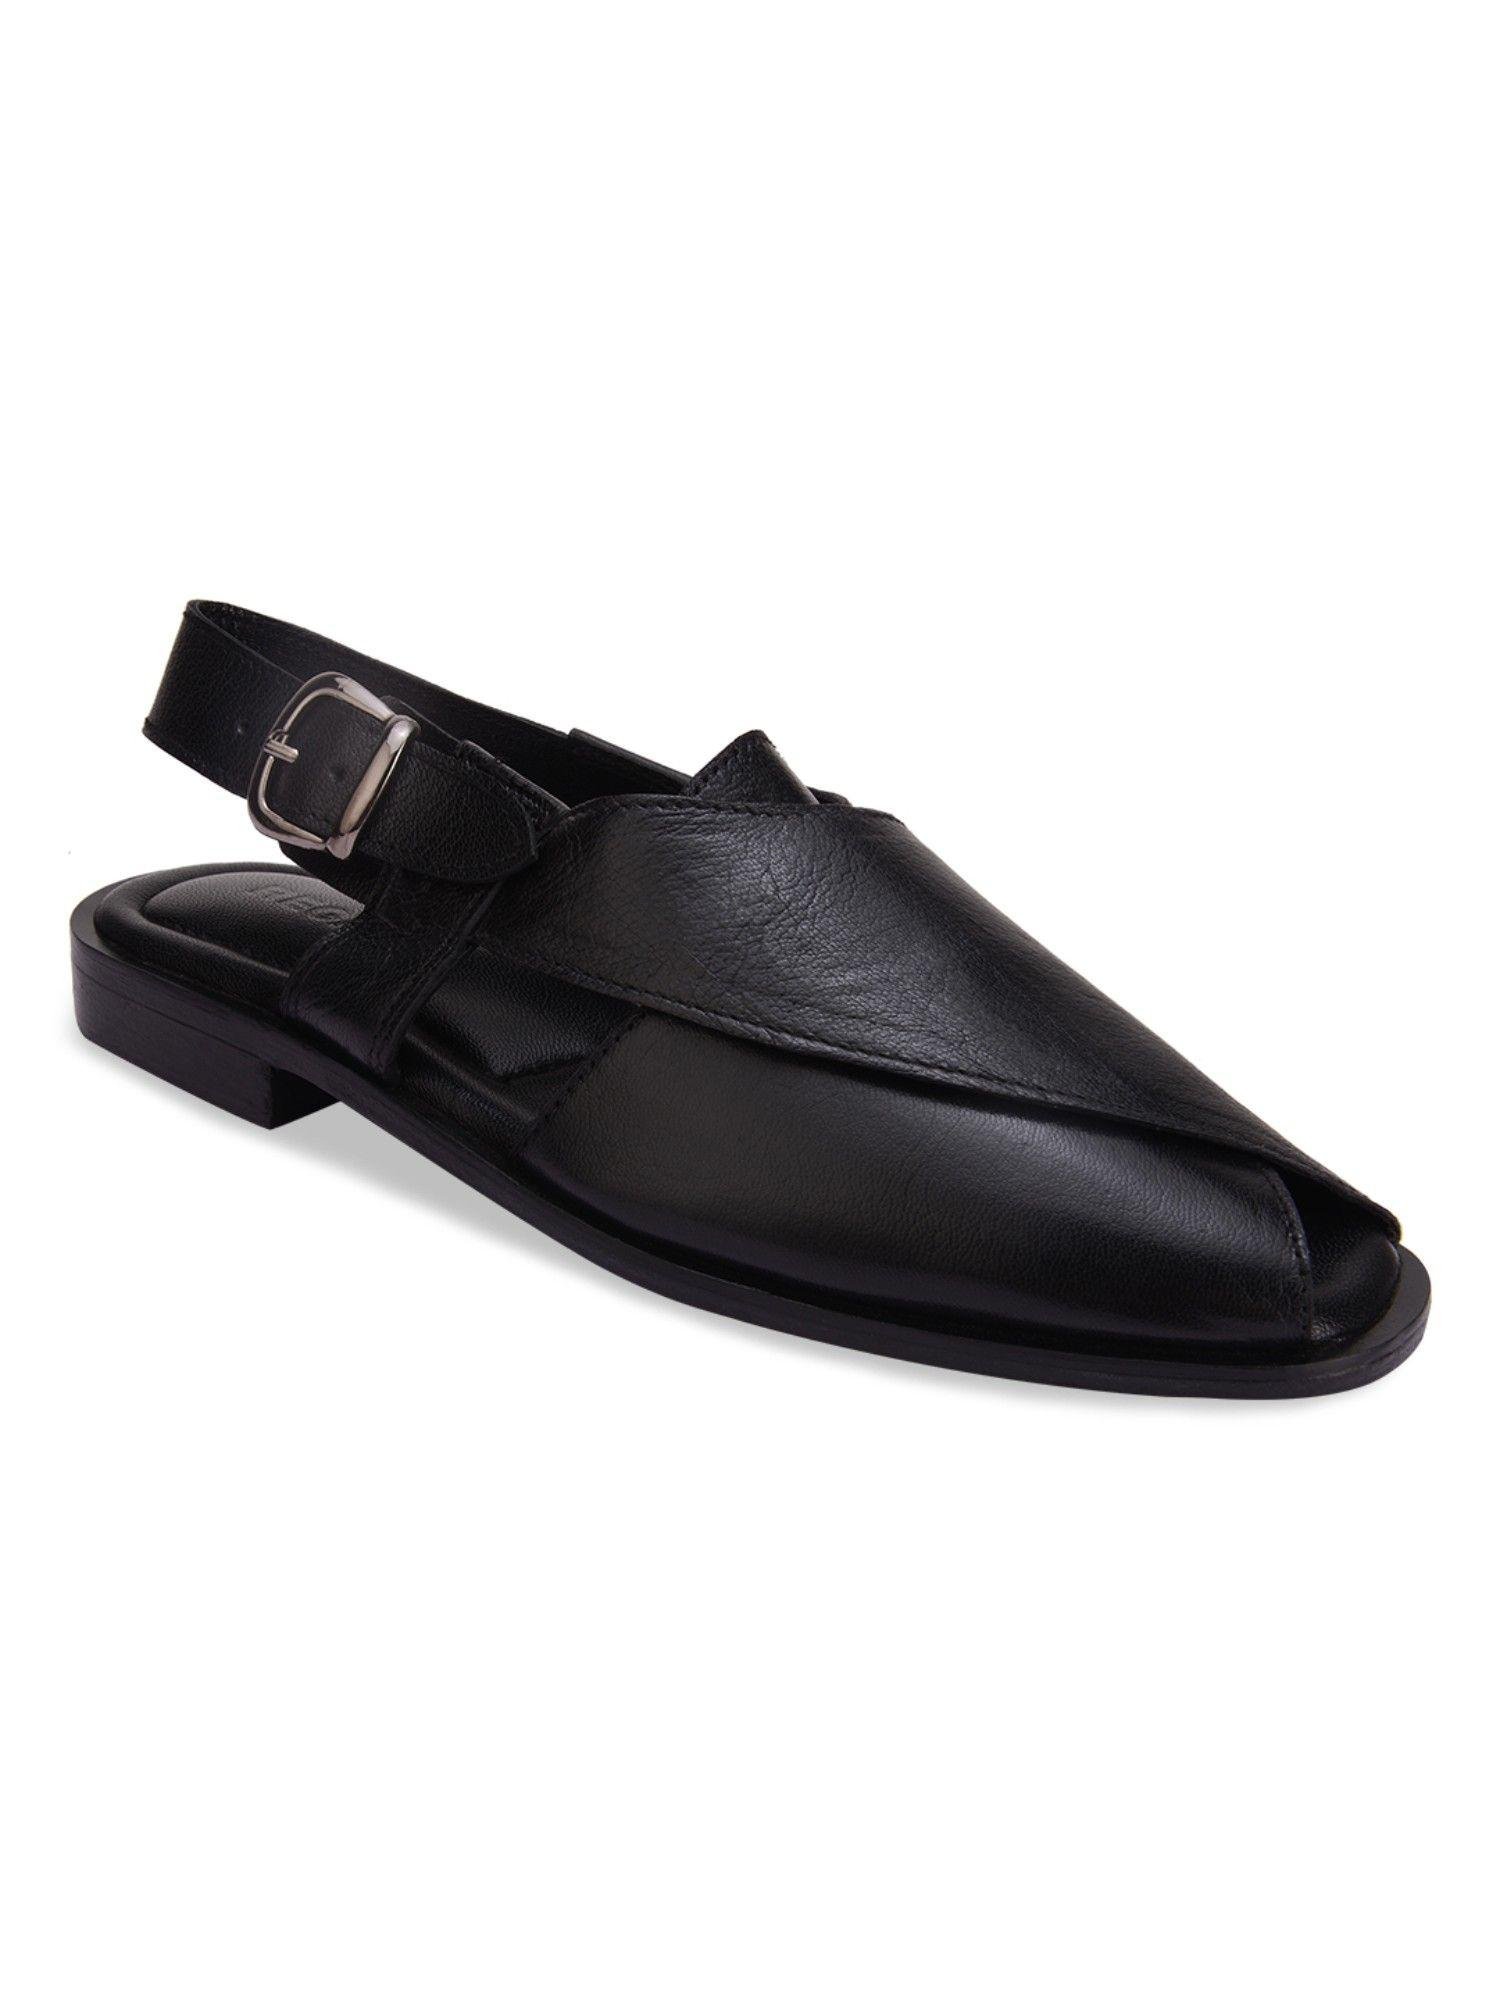 Black Men Solid Leather Ethnic Sandals